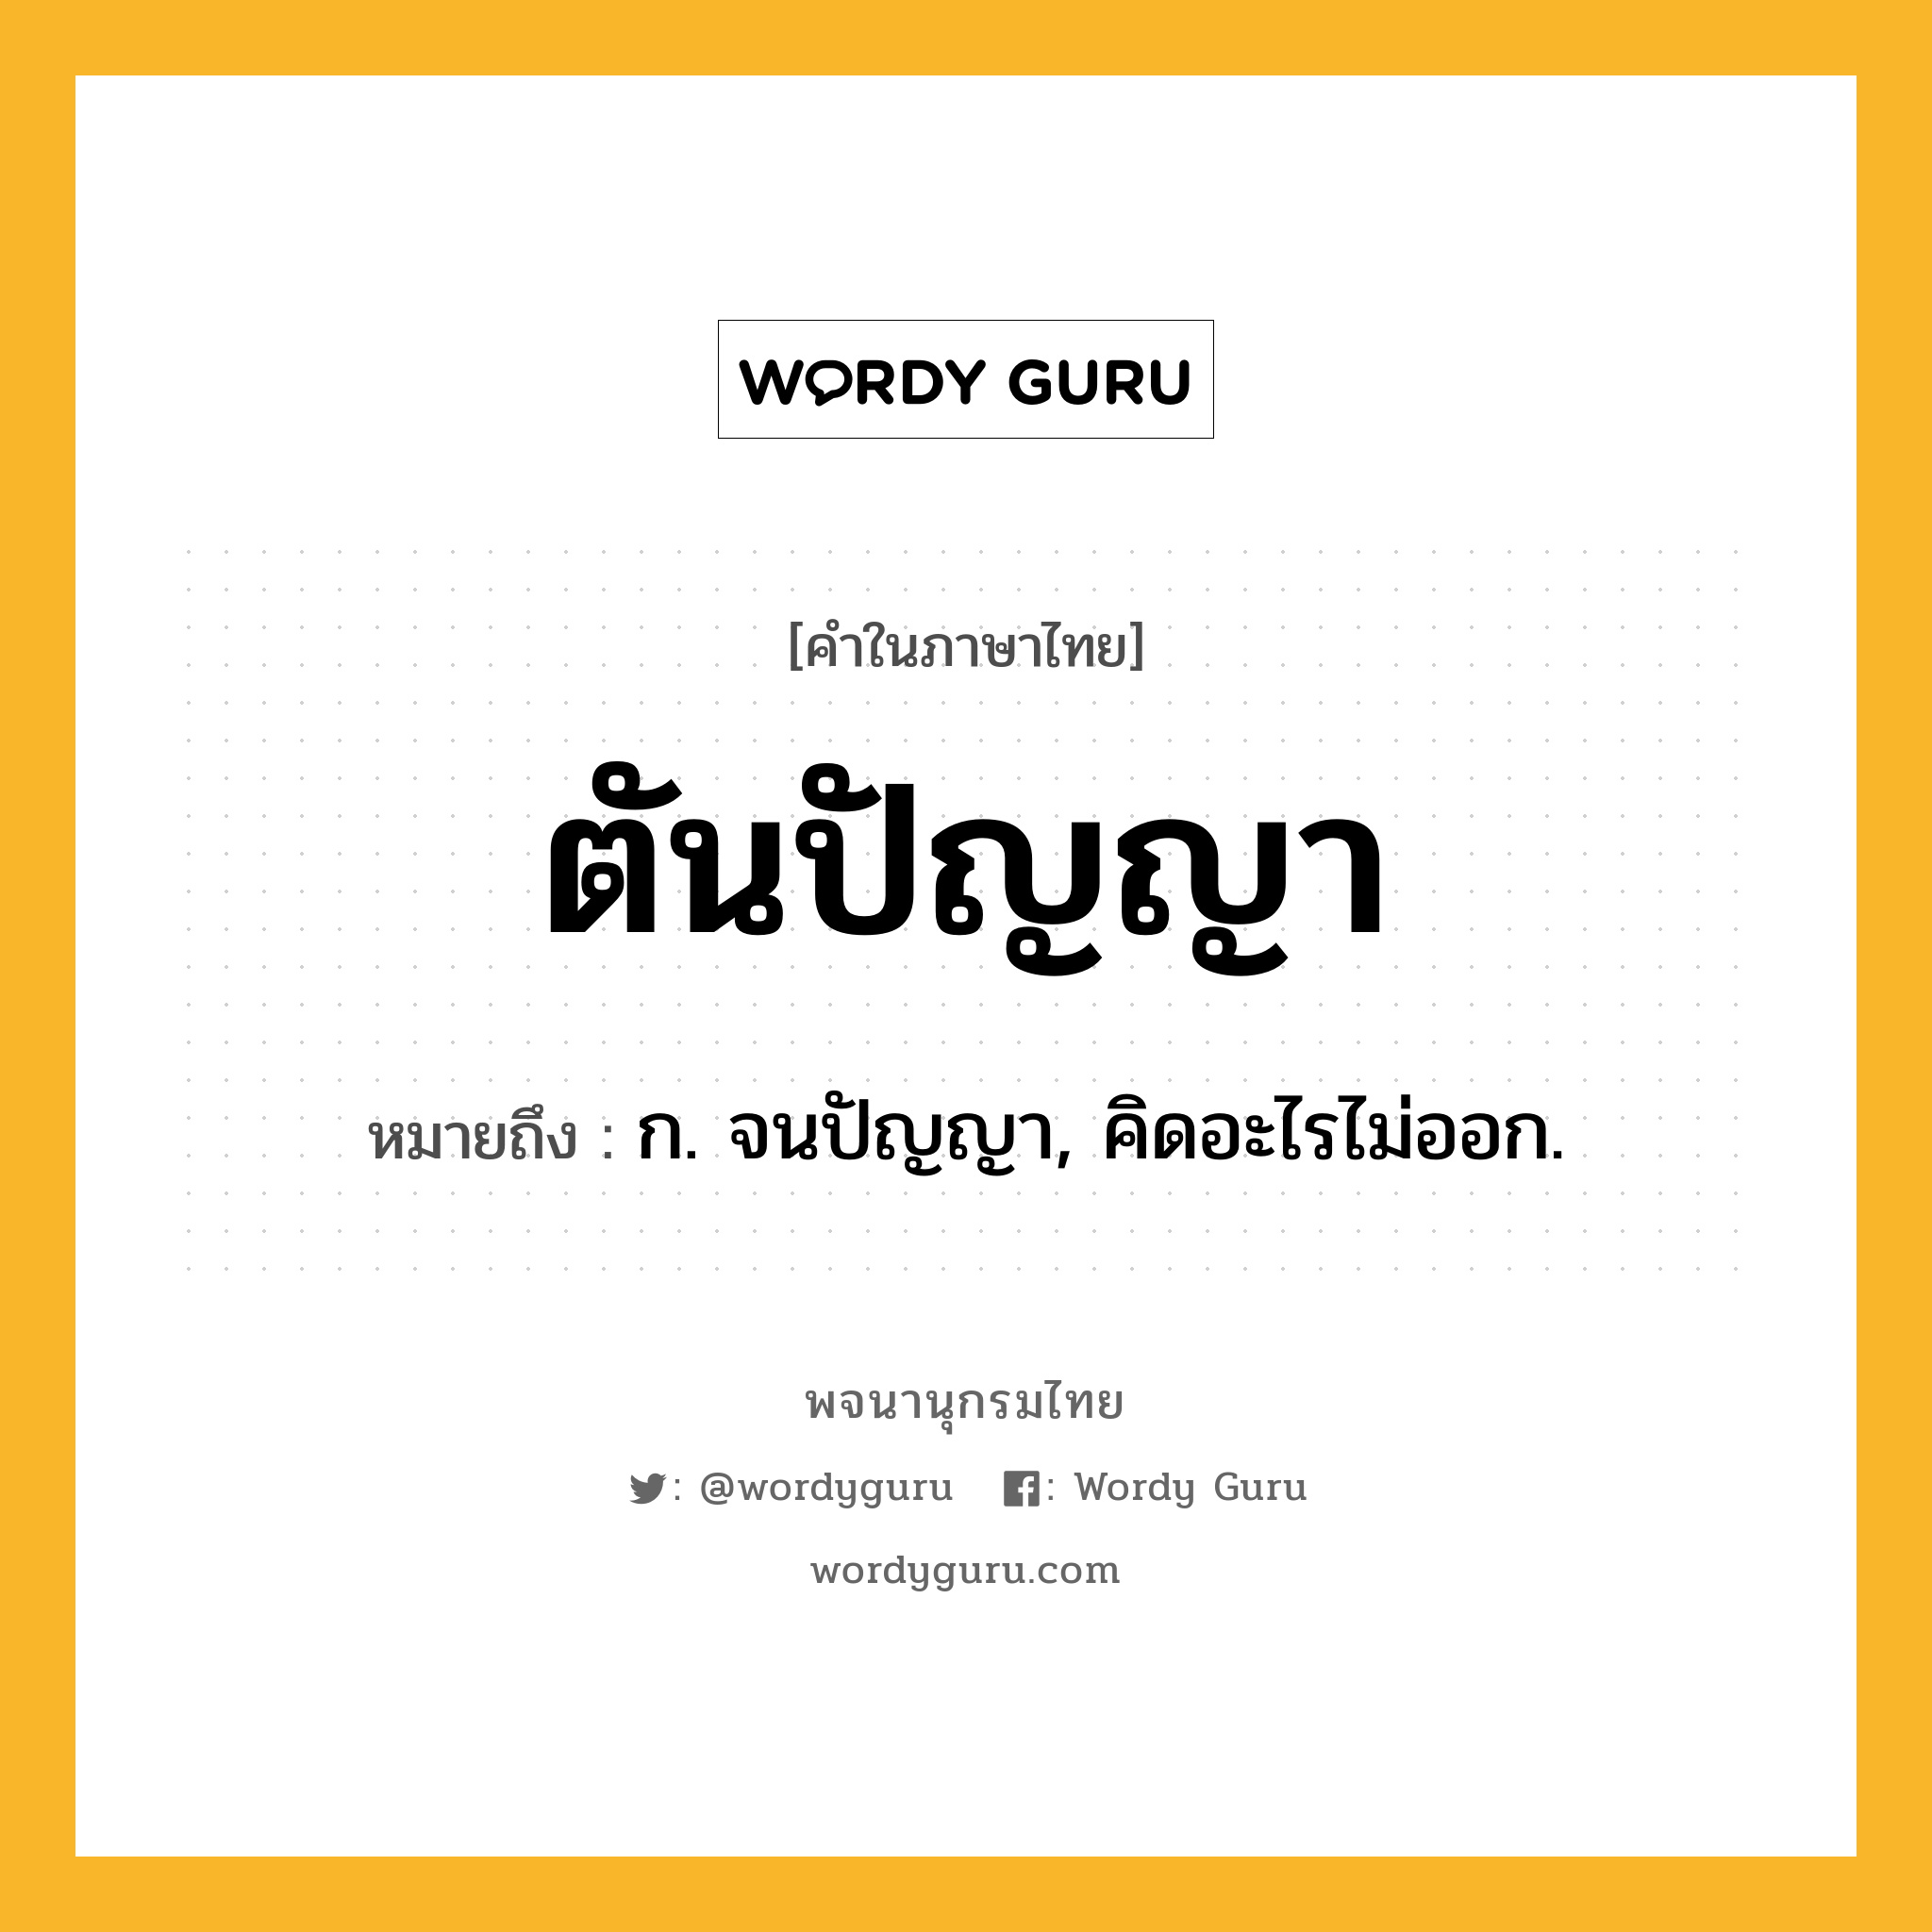 ตันปัญญา ความหมาย หมายถึงอะไร?, คำในภาษาไทย ตันปัญญา หมายถึง ก. จนปัญญา, คิดอะไรไม่ออก.